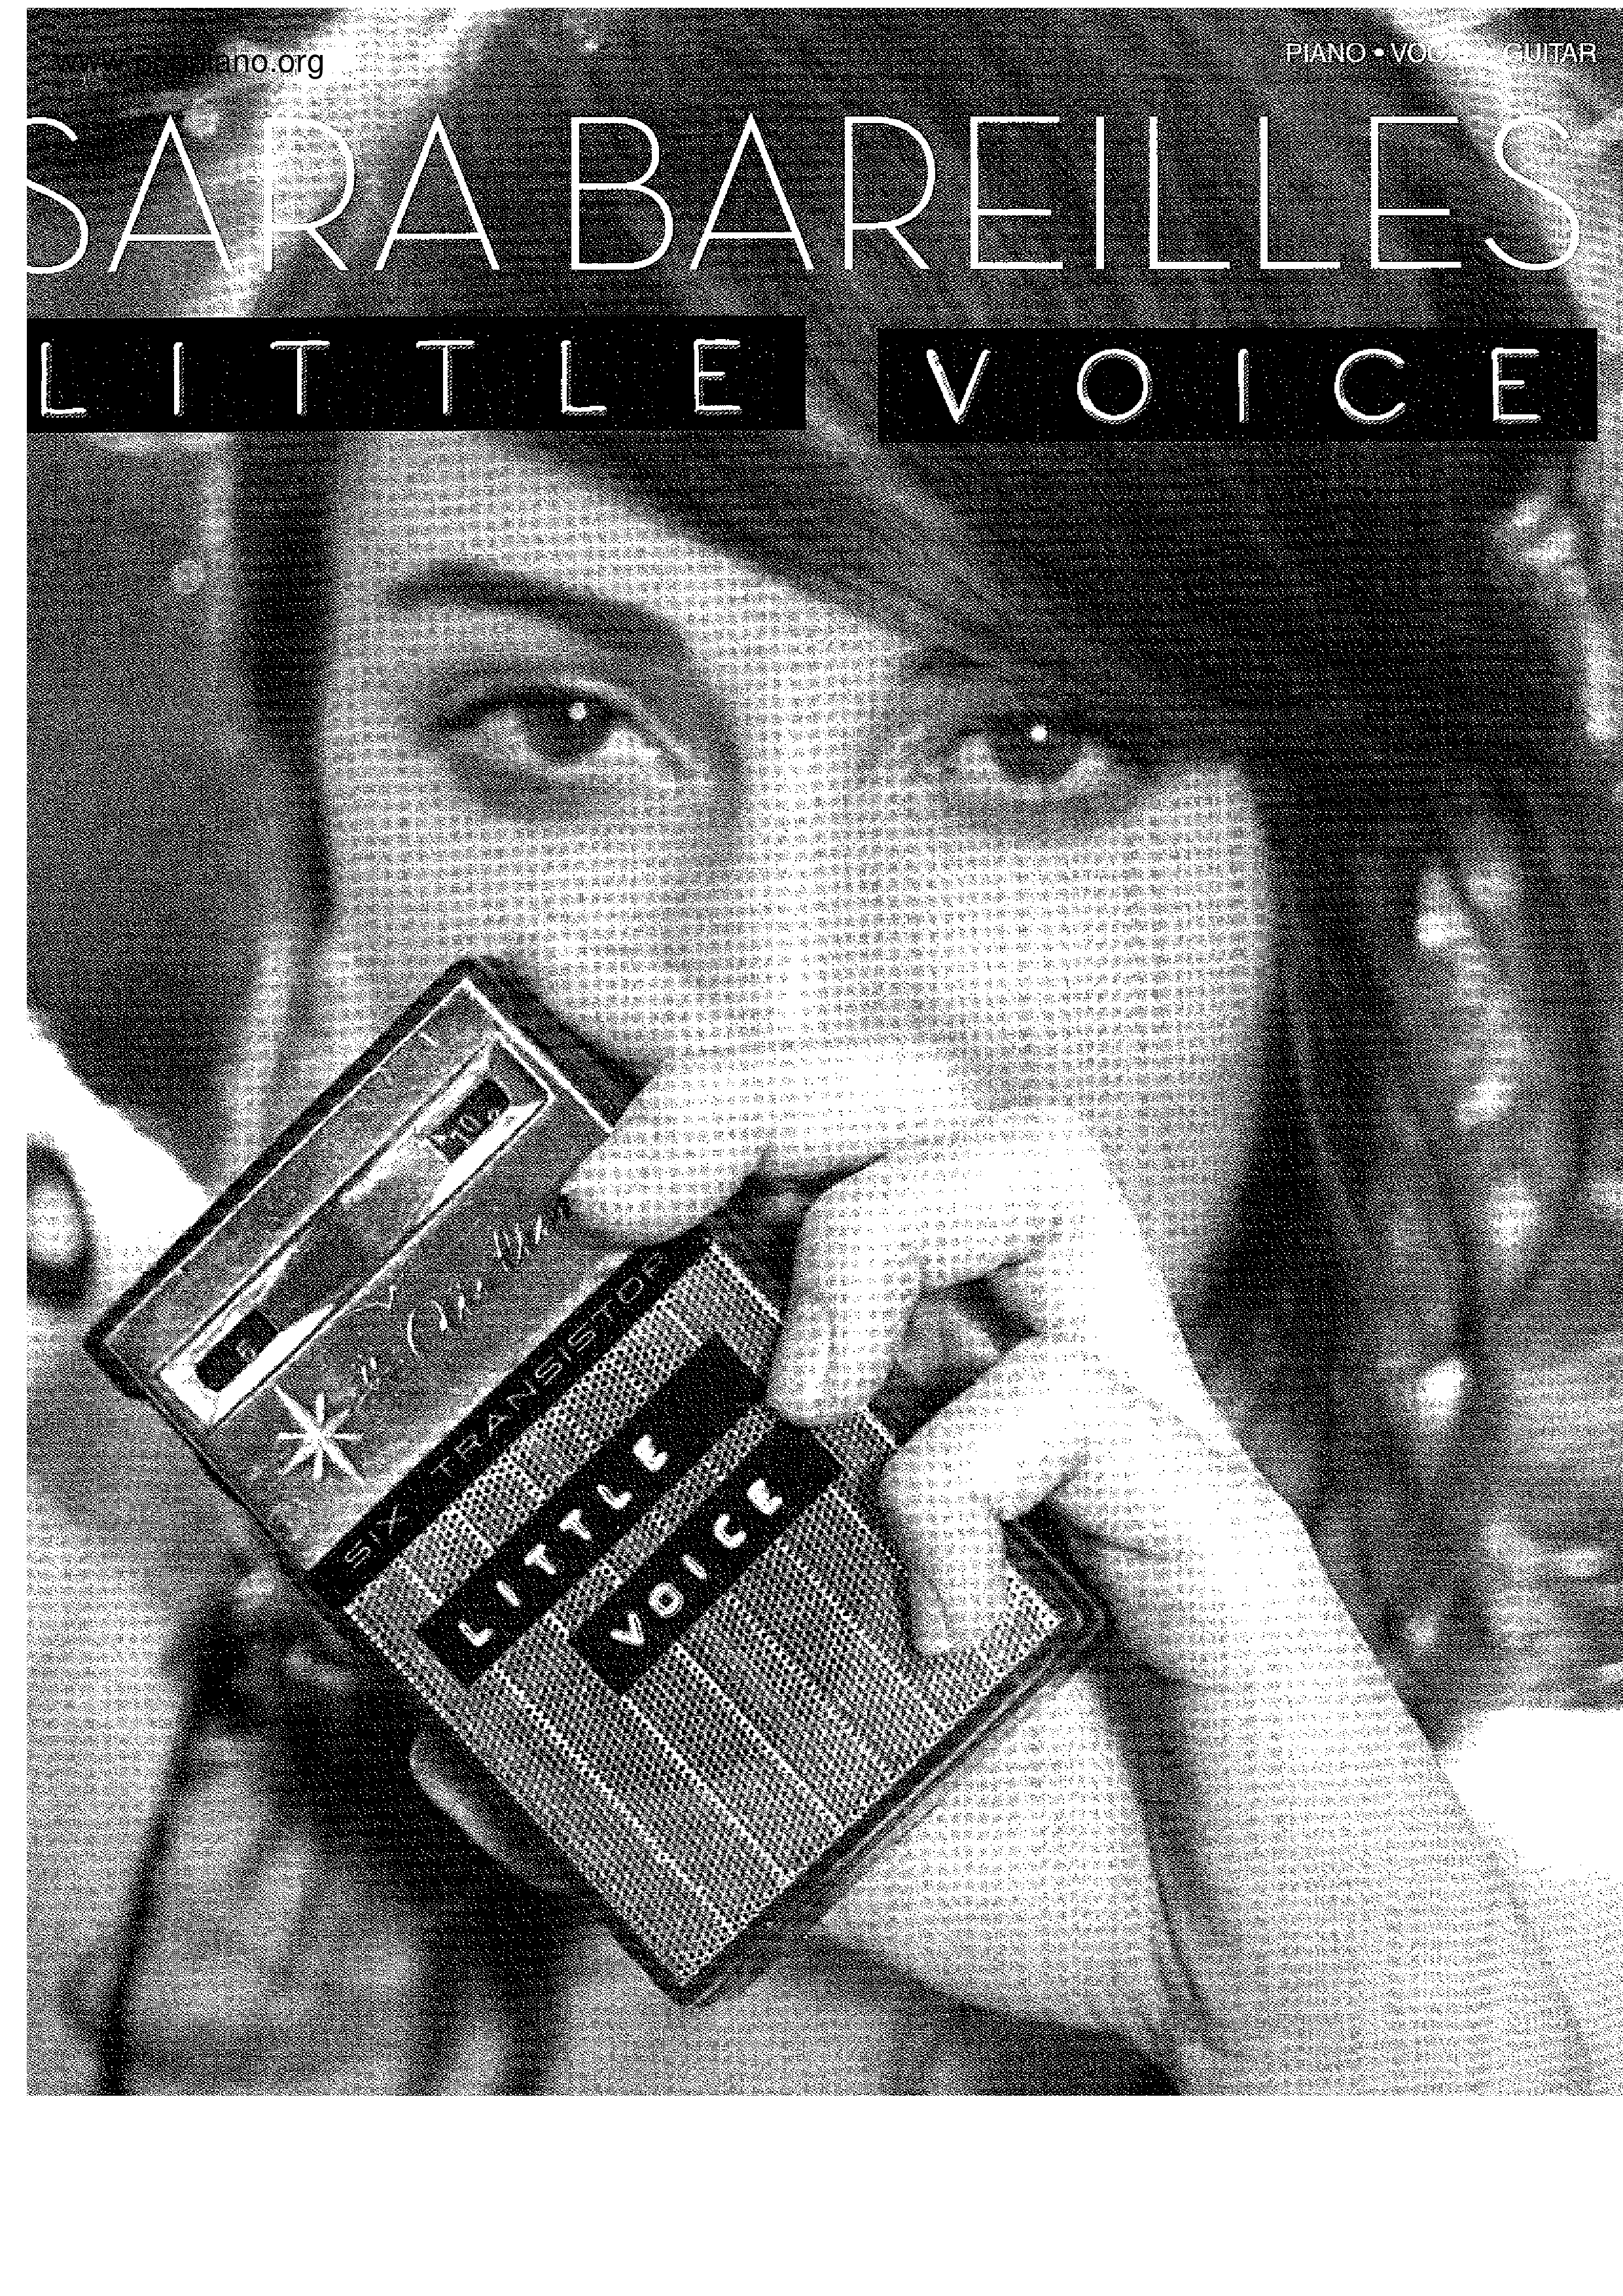 Little Voice 106 Pages琴谱